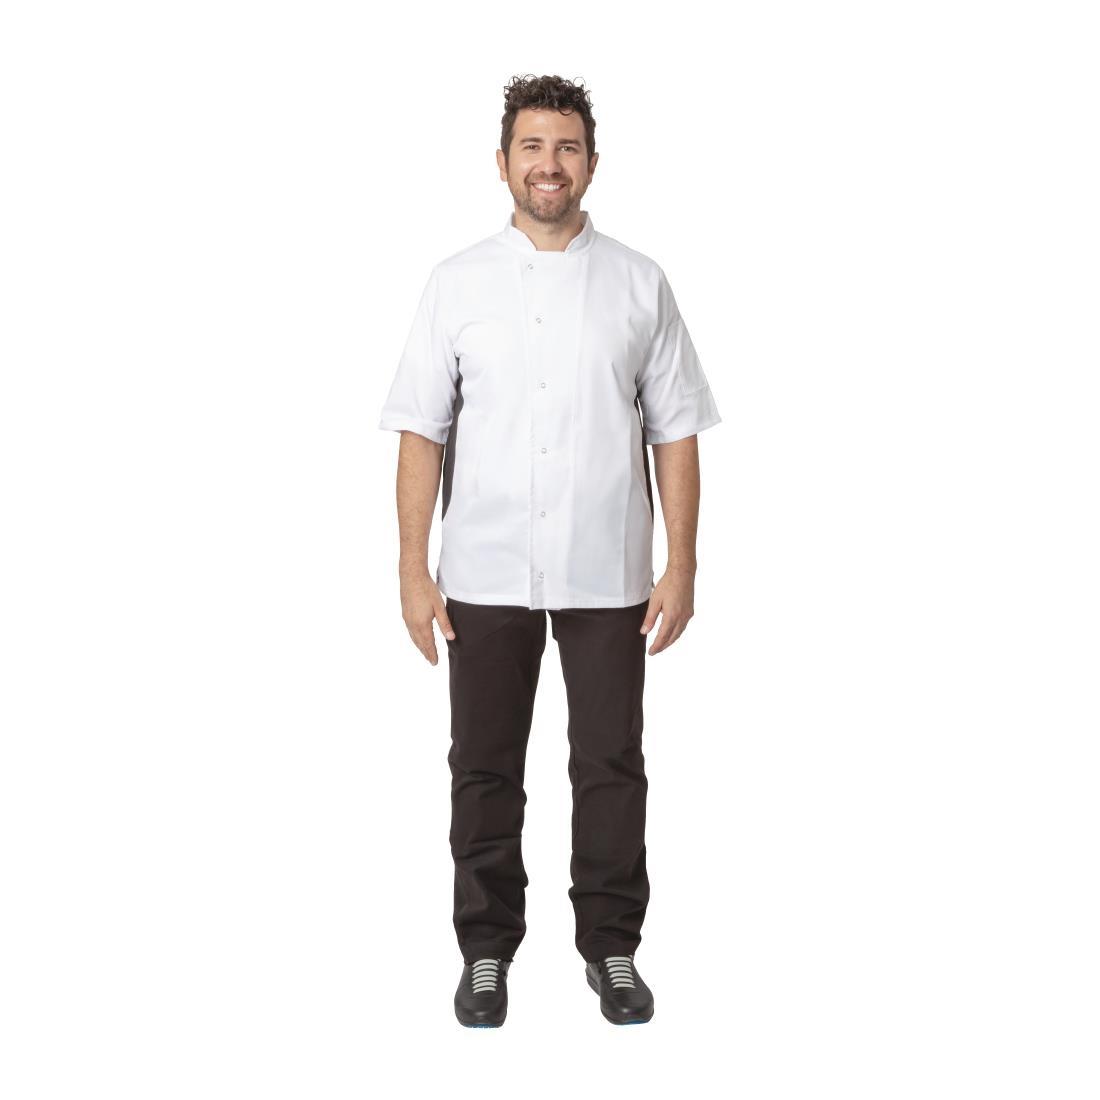 Whites Nevada Unisex Chefs Jacket Short Sleeve Black and White XS - A928-XS  - 2